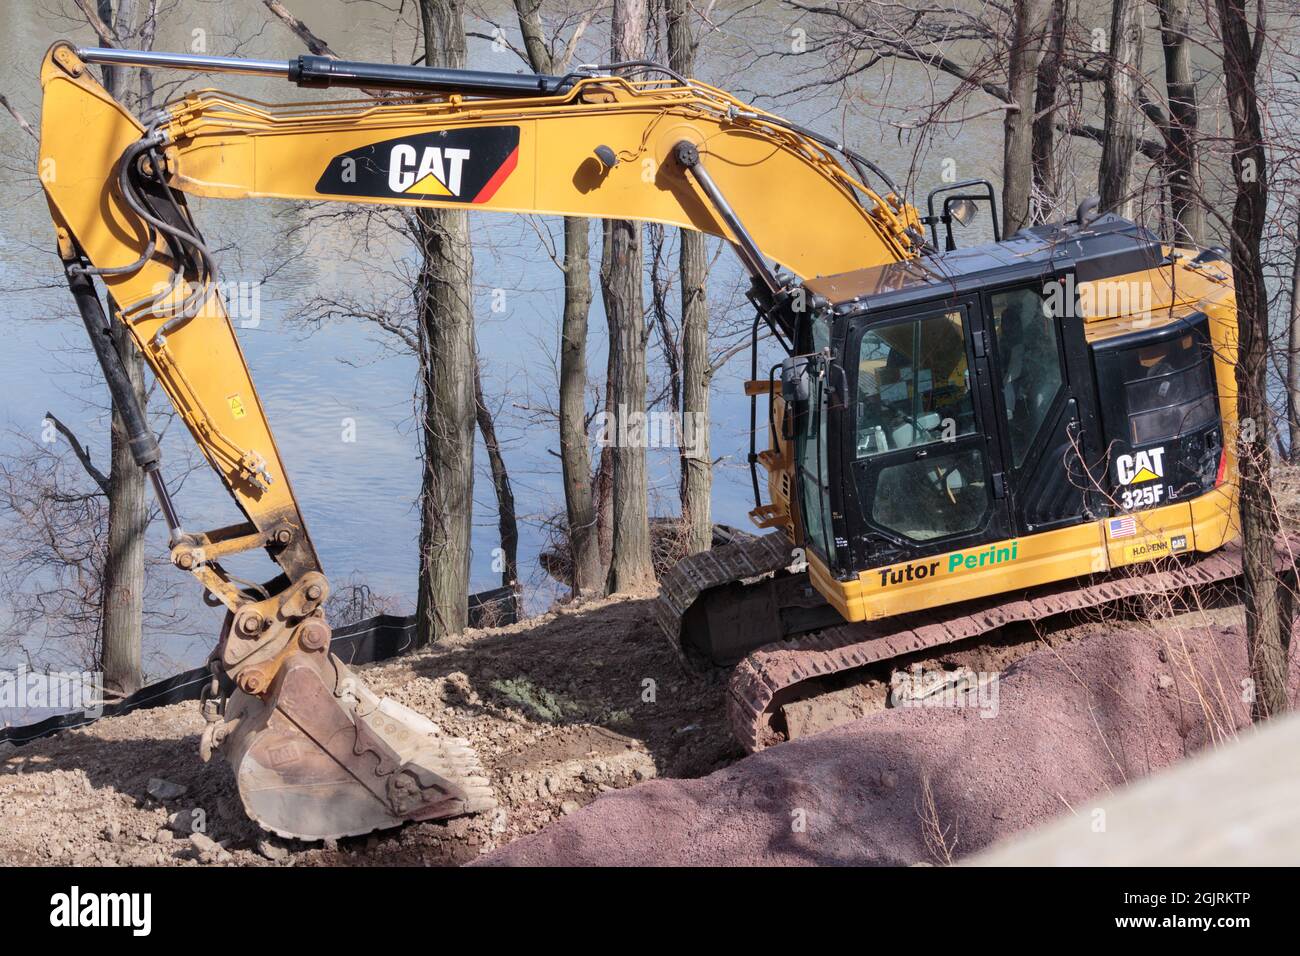 Une pelle hydraulique 325f Cat stationnée sur le flanc d'une colline sur le fleuve Hudson, par la marque Caterpillar, avec une étiquette Tutor Perini, une construction majeure Banque D'Images